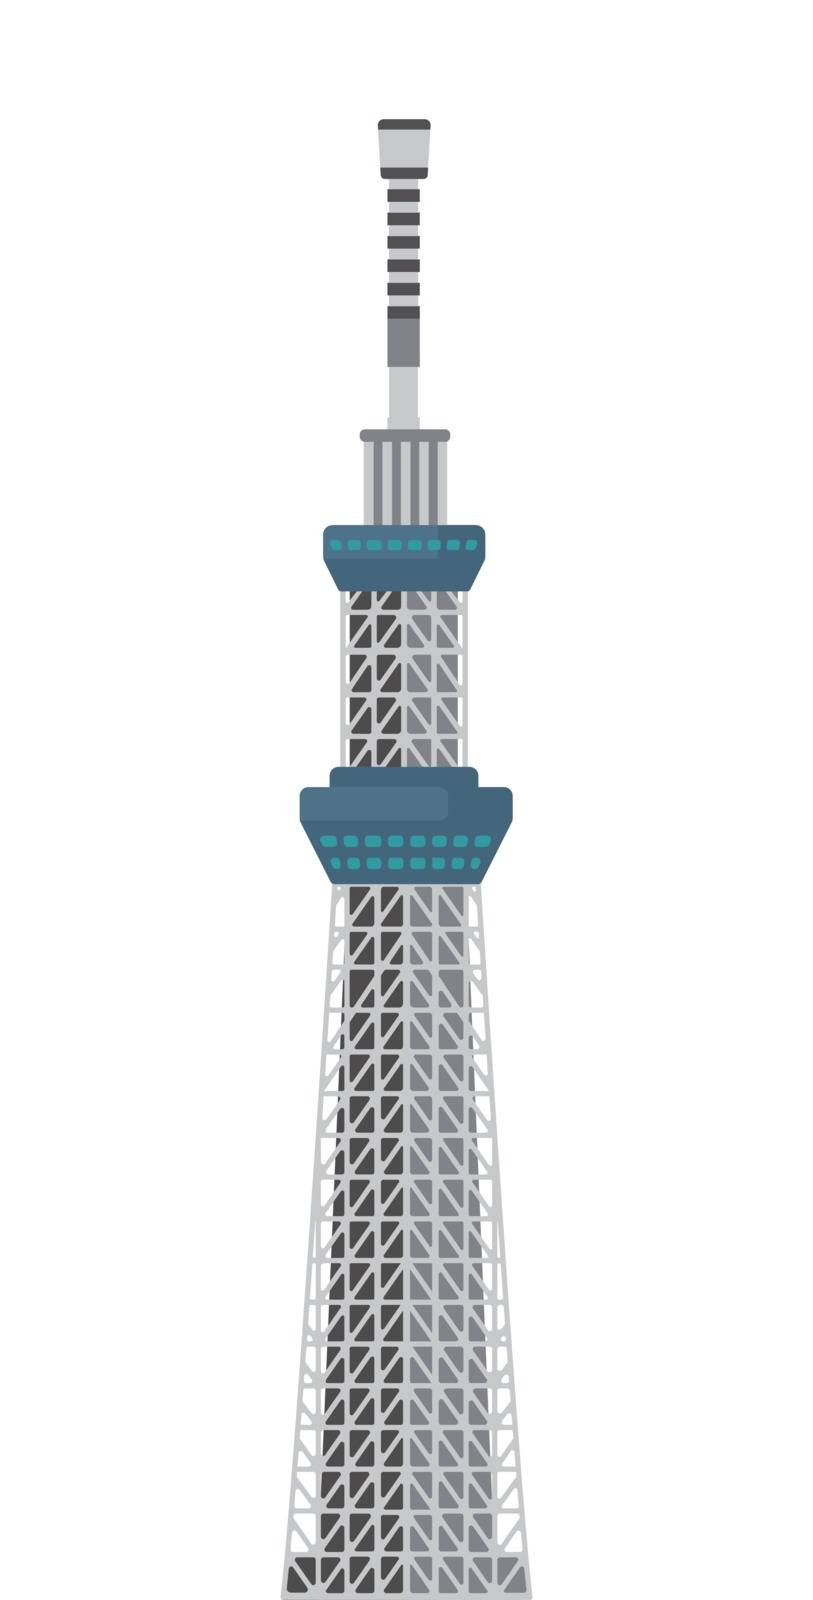 Tokyo sky tree / Tokyo landmark building illustration